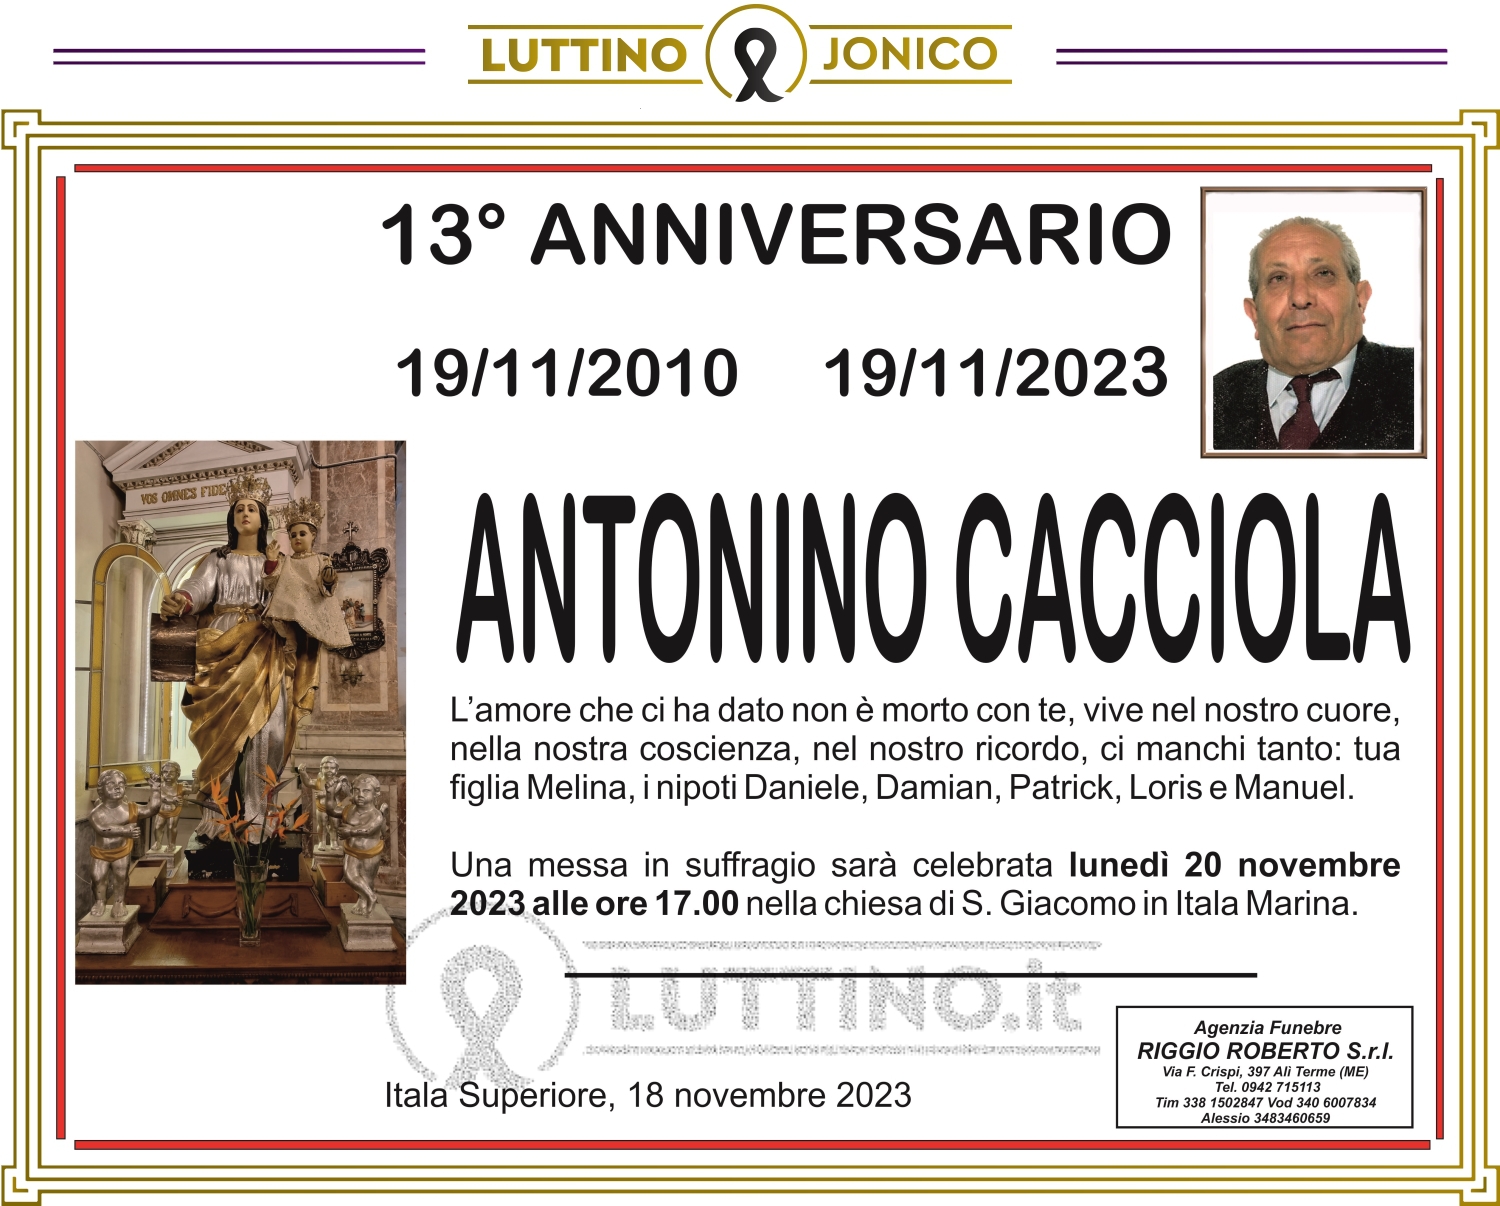 Antonino Cacciola